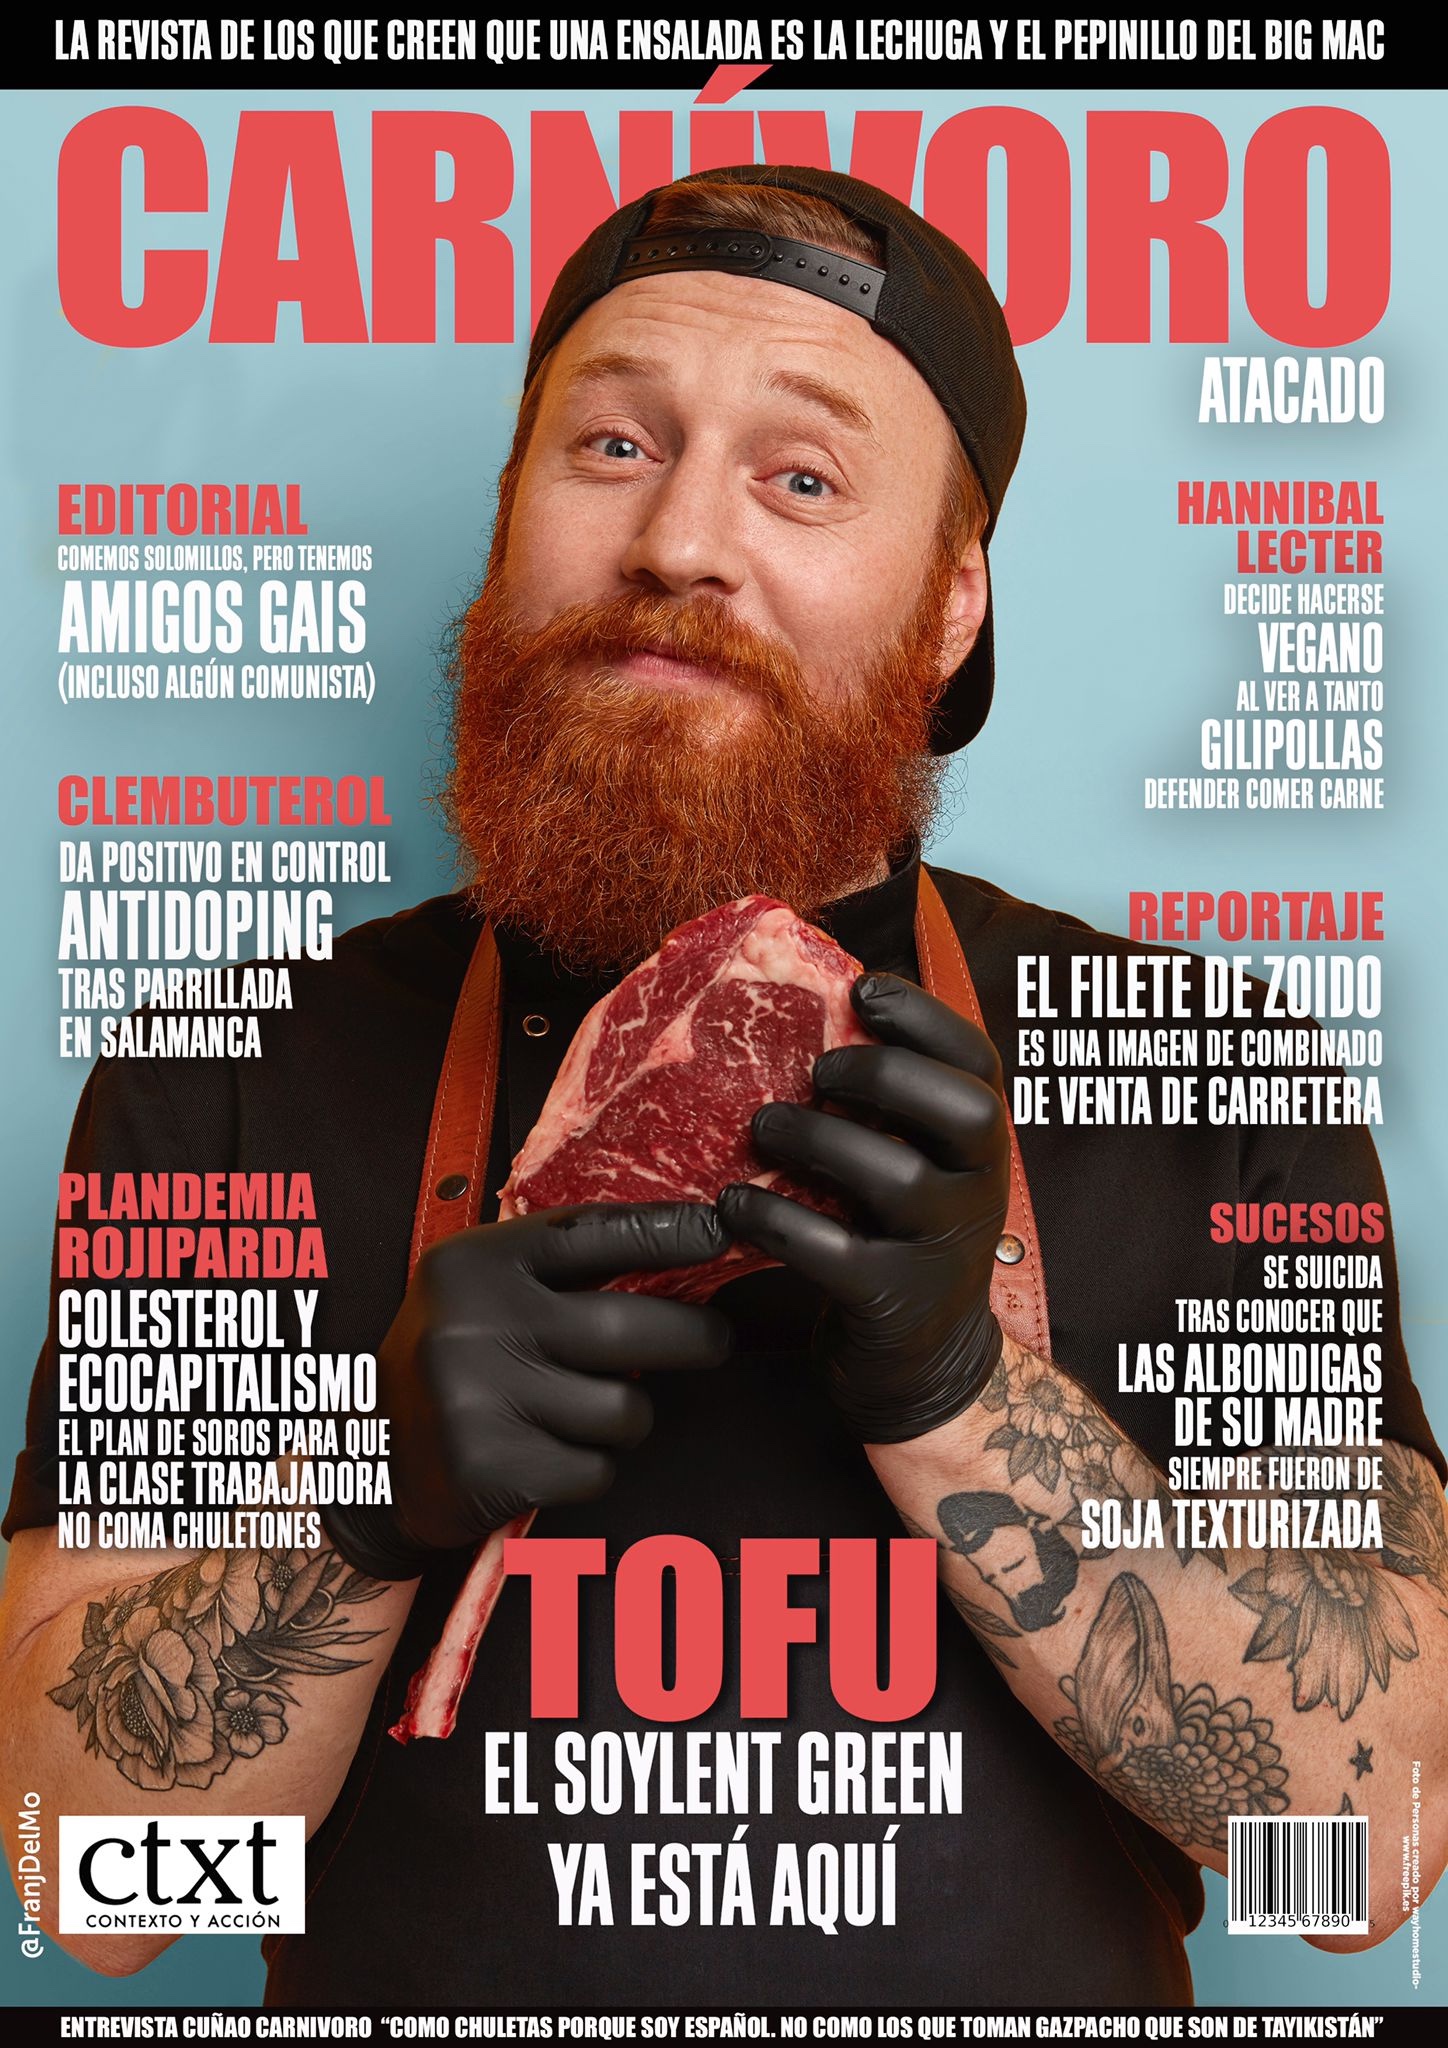 <p><strong>CARNÍVORO:</strong> La revista de los que creen que una ensalada es una lechuga y el pepinillo del Big Mac. Una portada de @FranjDelMo para @ctxt_es.</p>